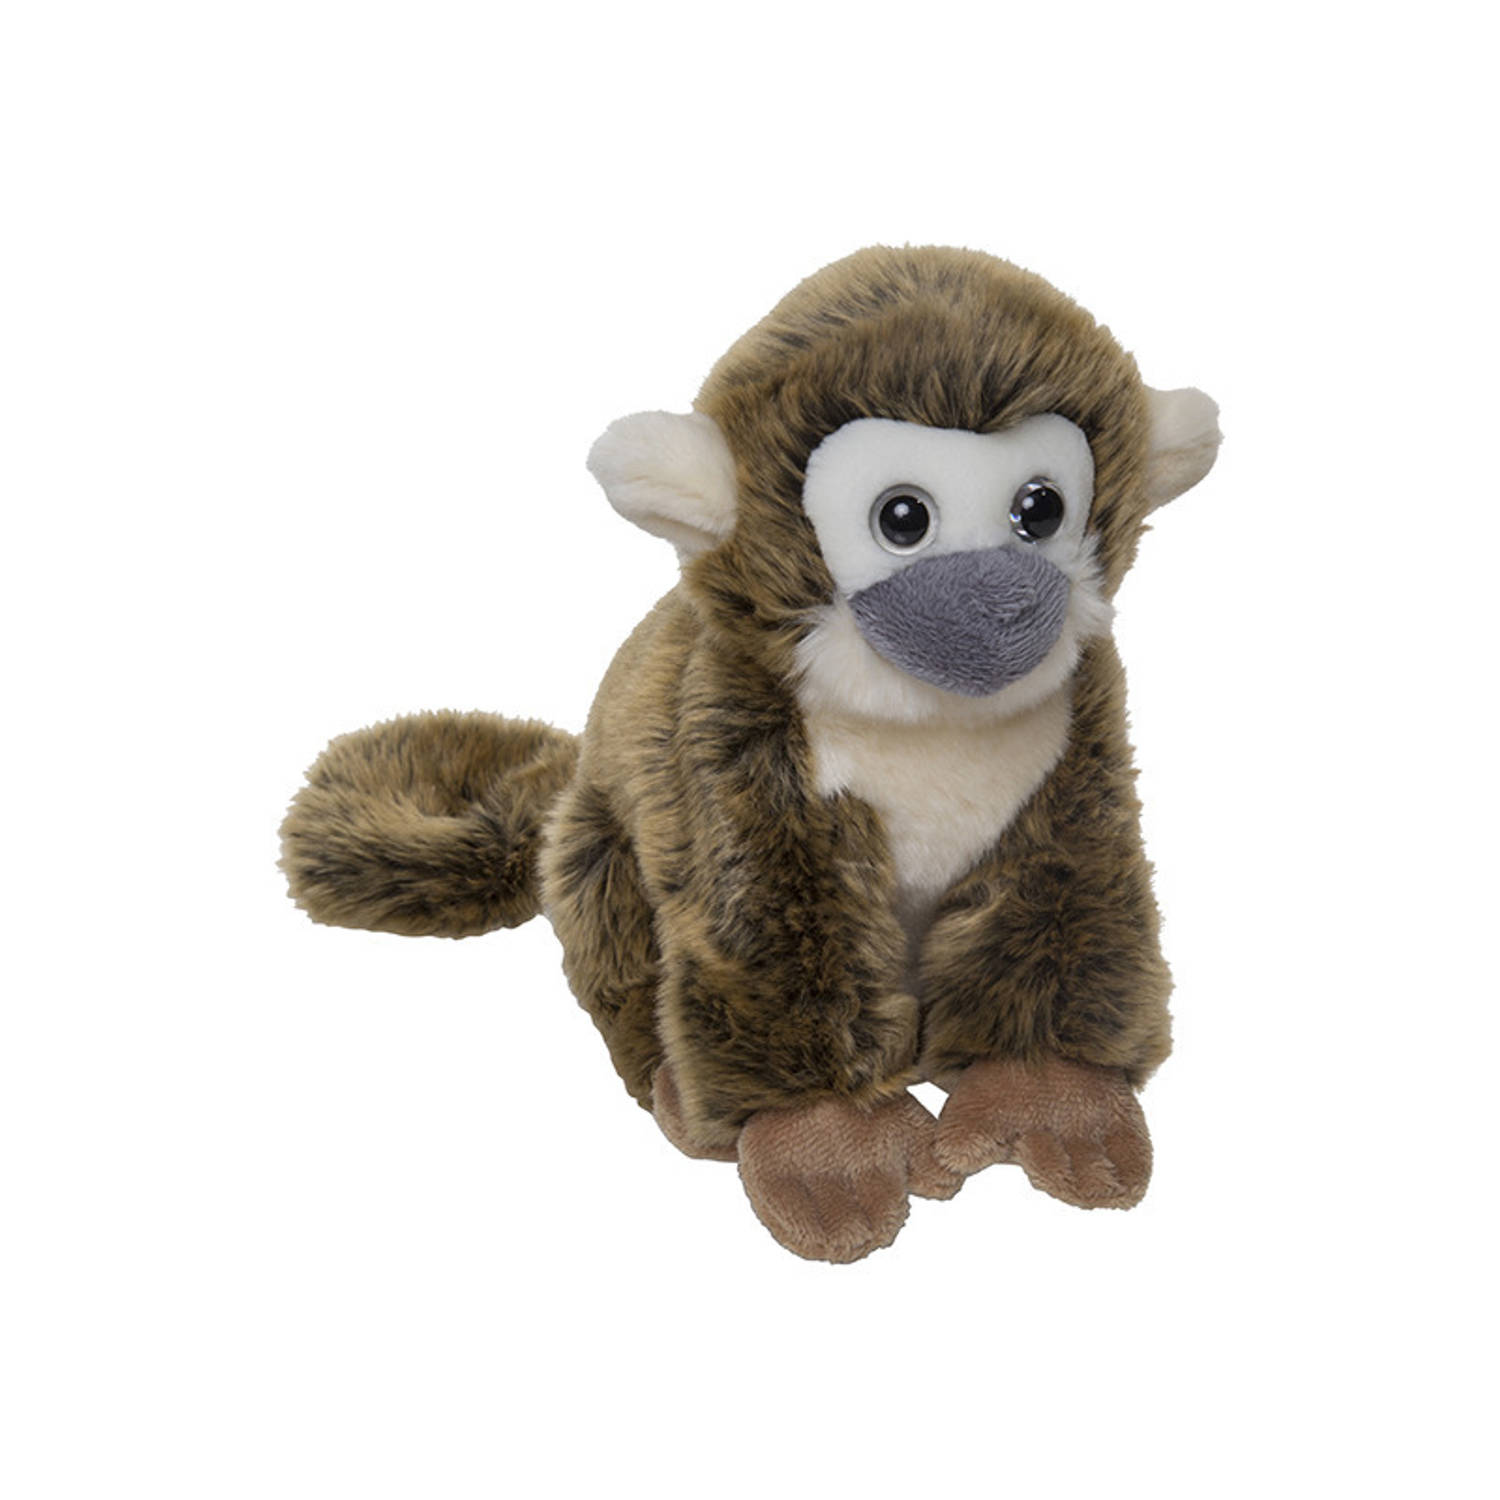 Pluche bruin berg aapje knuffel van 22 cm - Dieren speelgoed knuffels cadeau - Apen